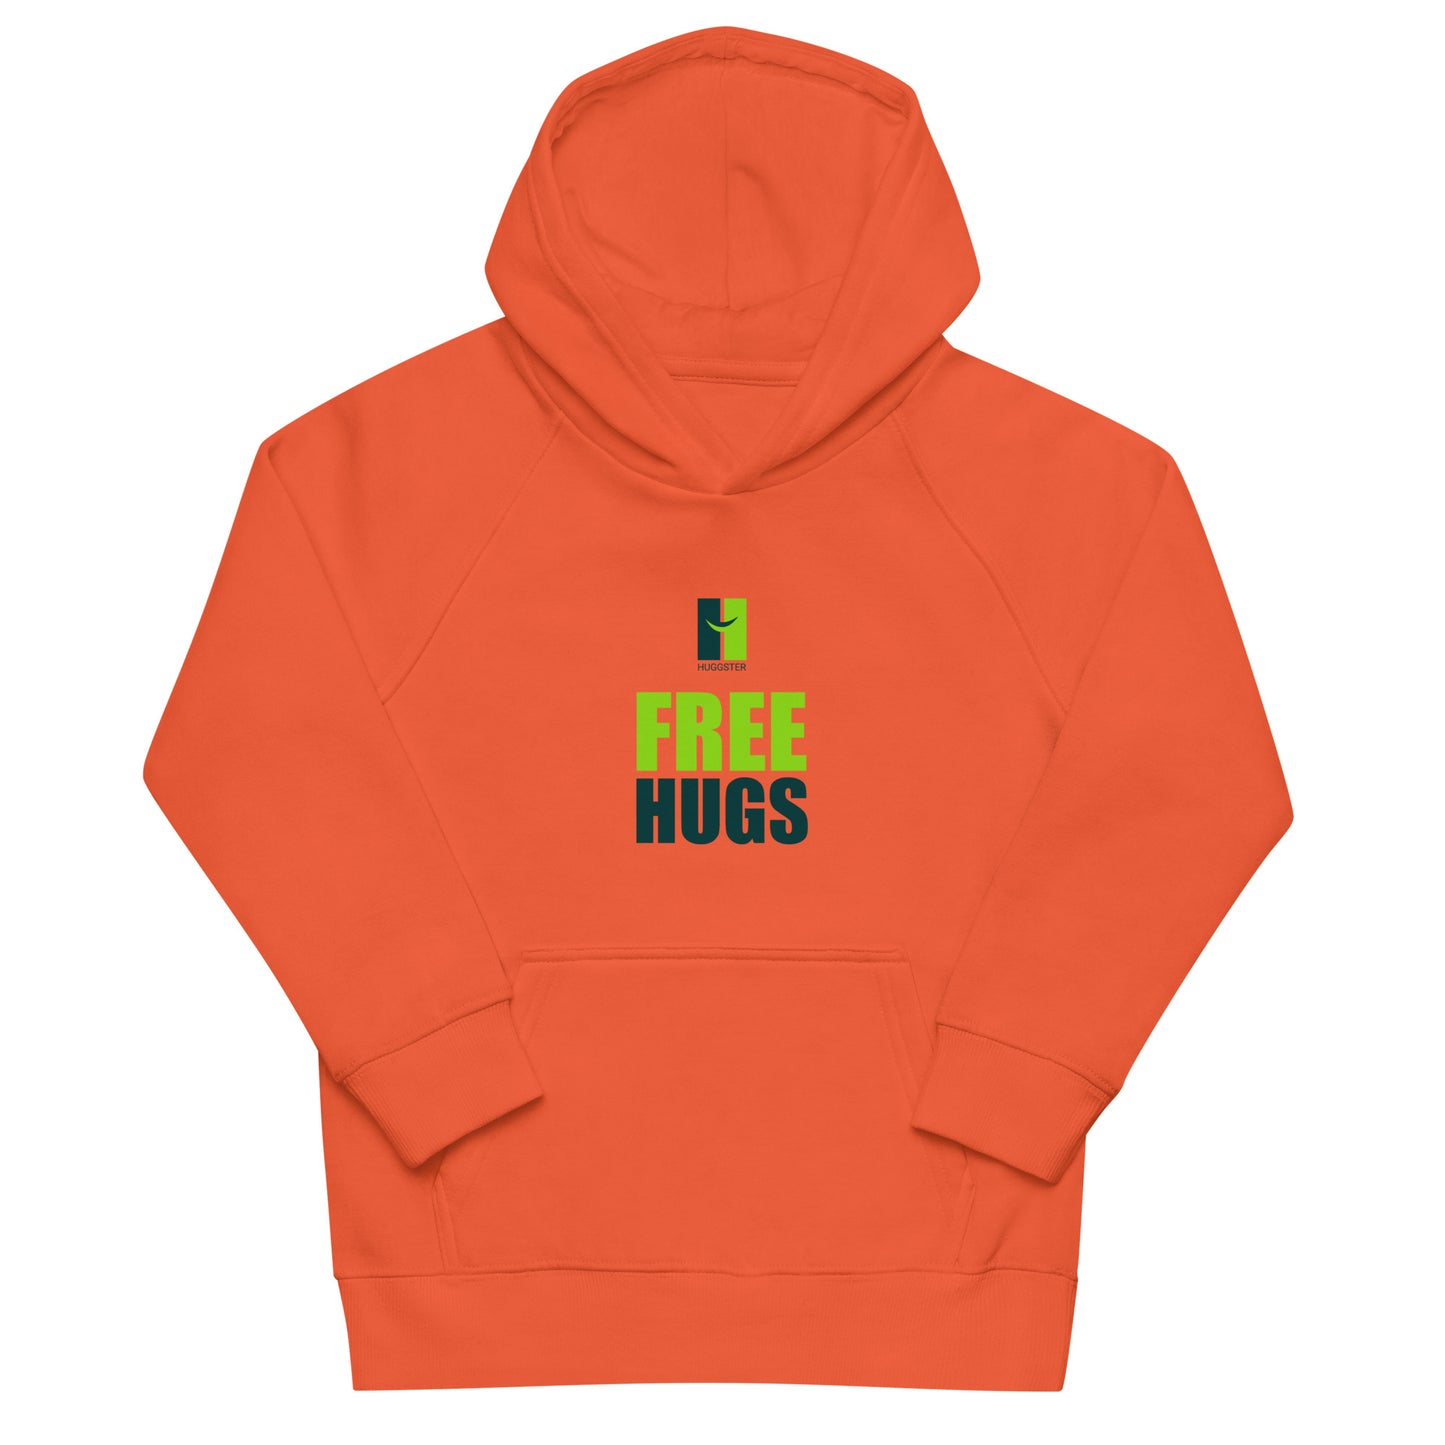 Öko-Kapuzenpullover für Kinder "Free Hugs"